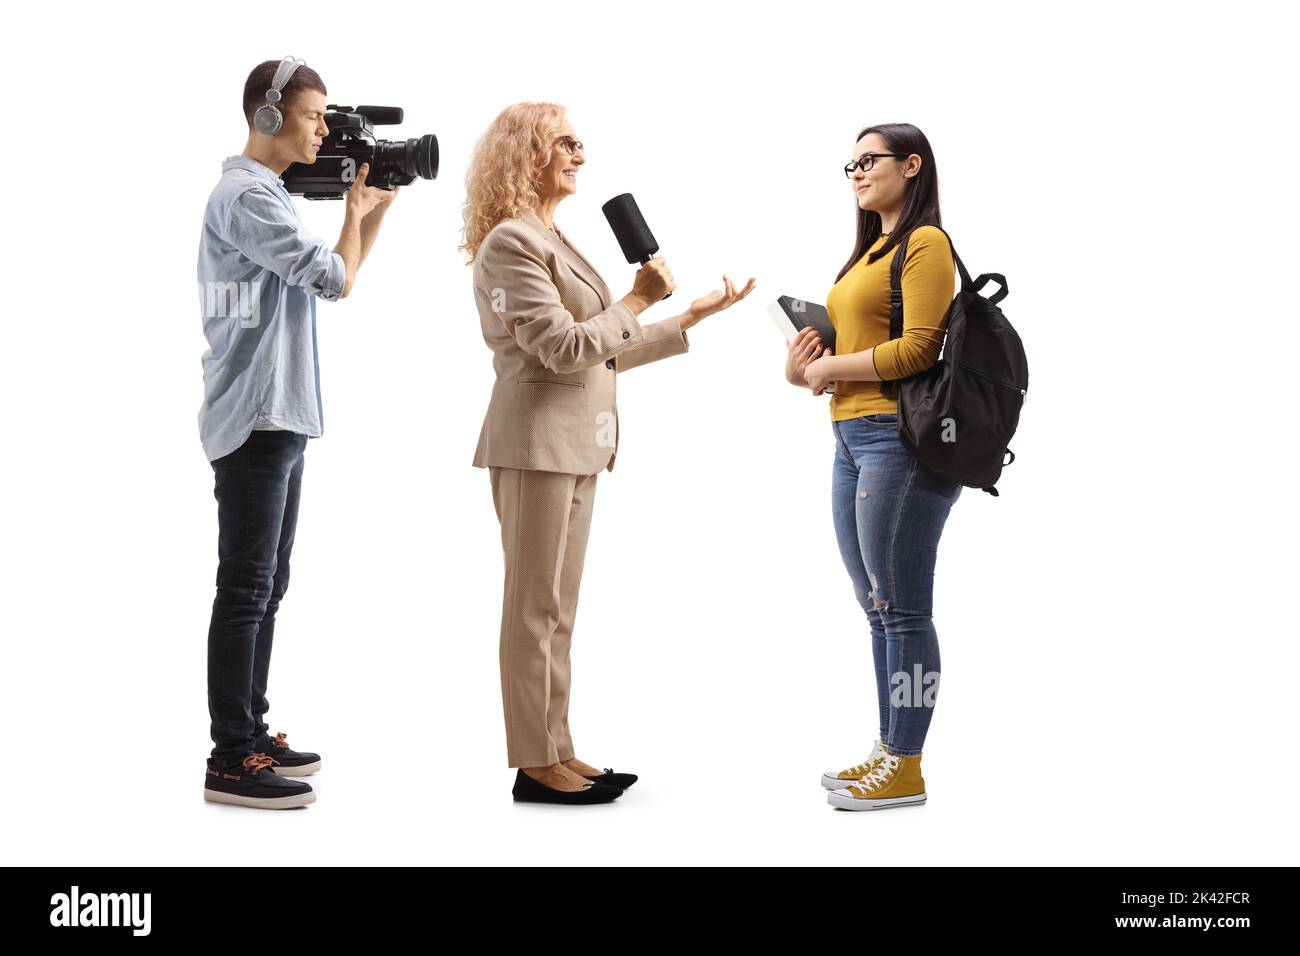 Femme journaliste interrogeant un étudiant et un caméraman, isolé sur fond blanc Banque D'Images